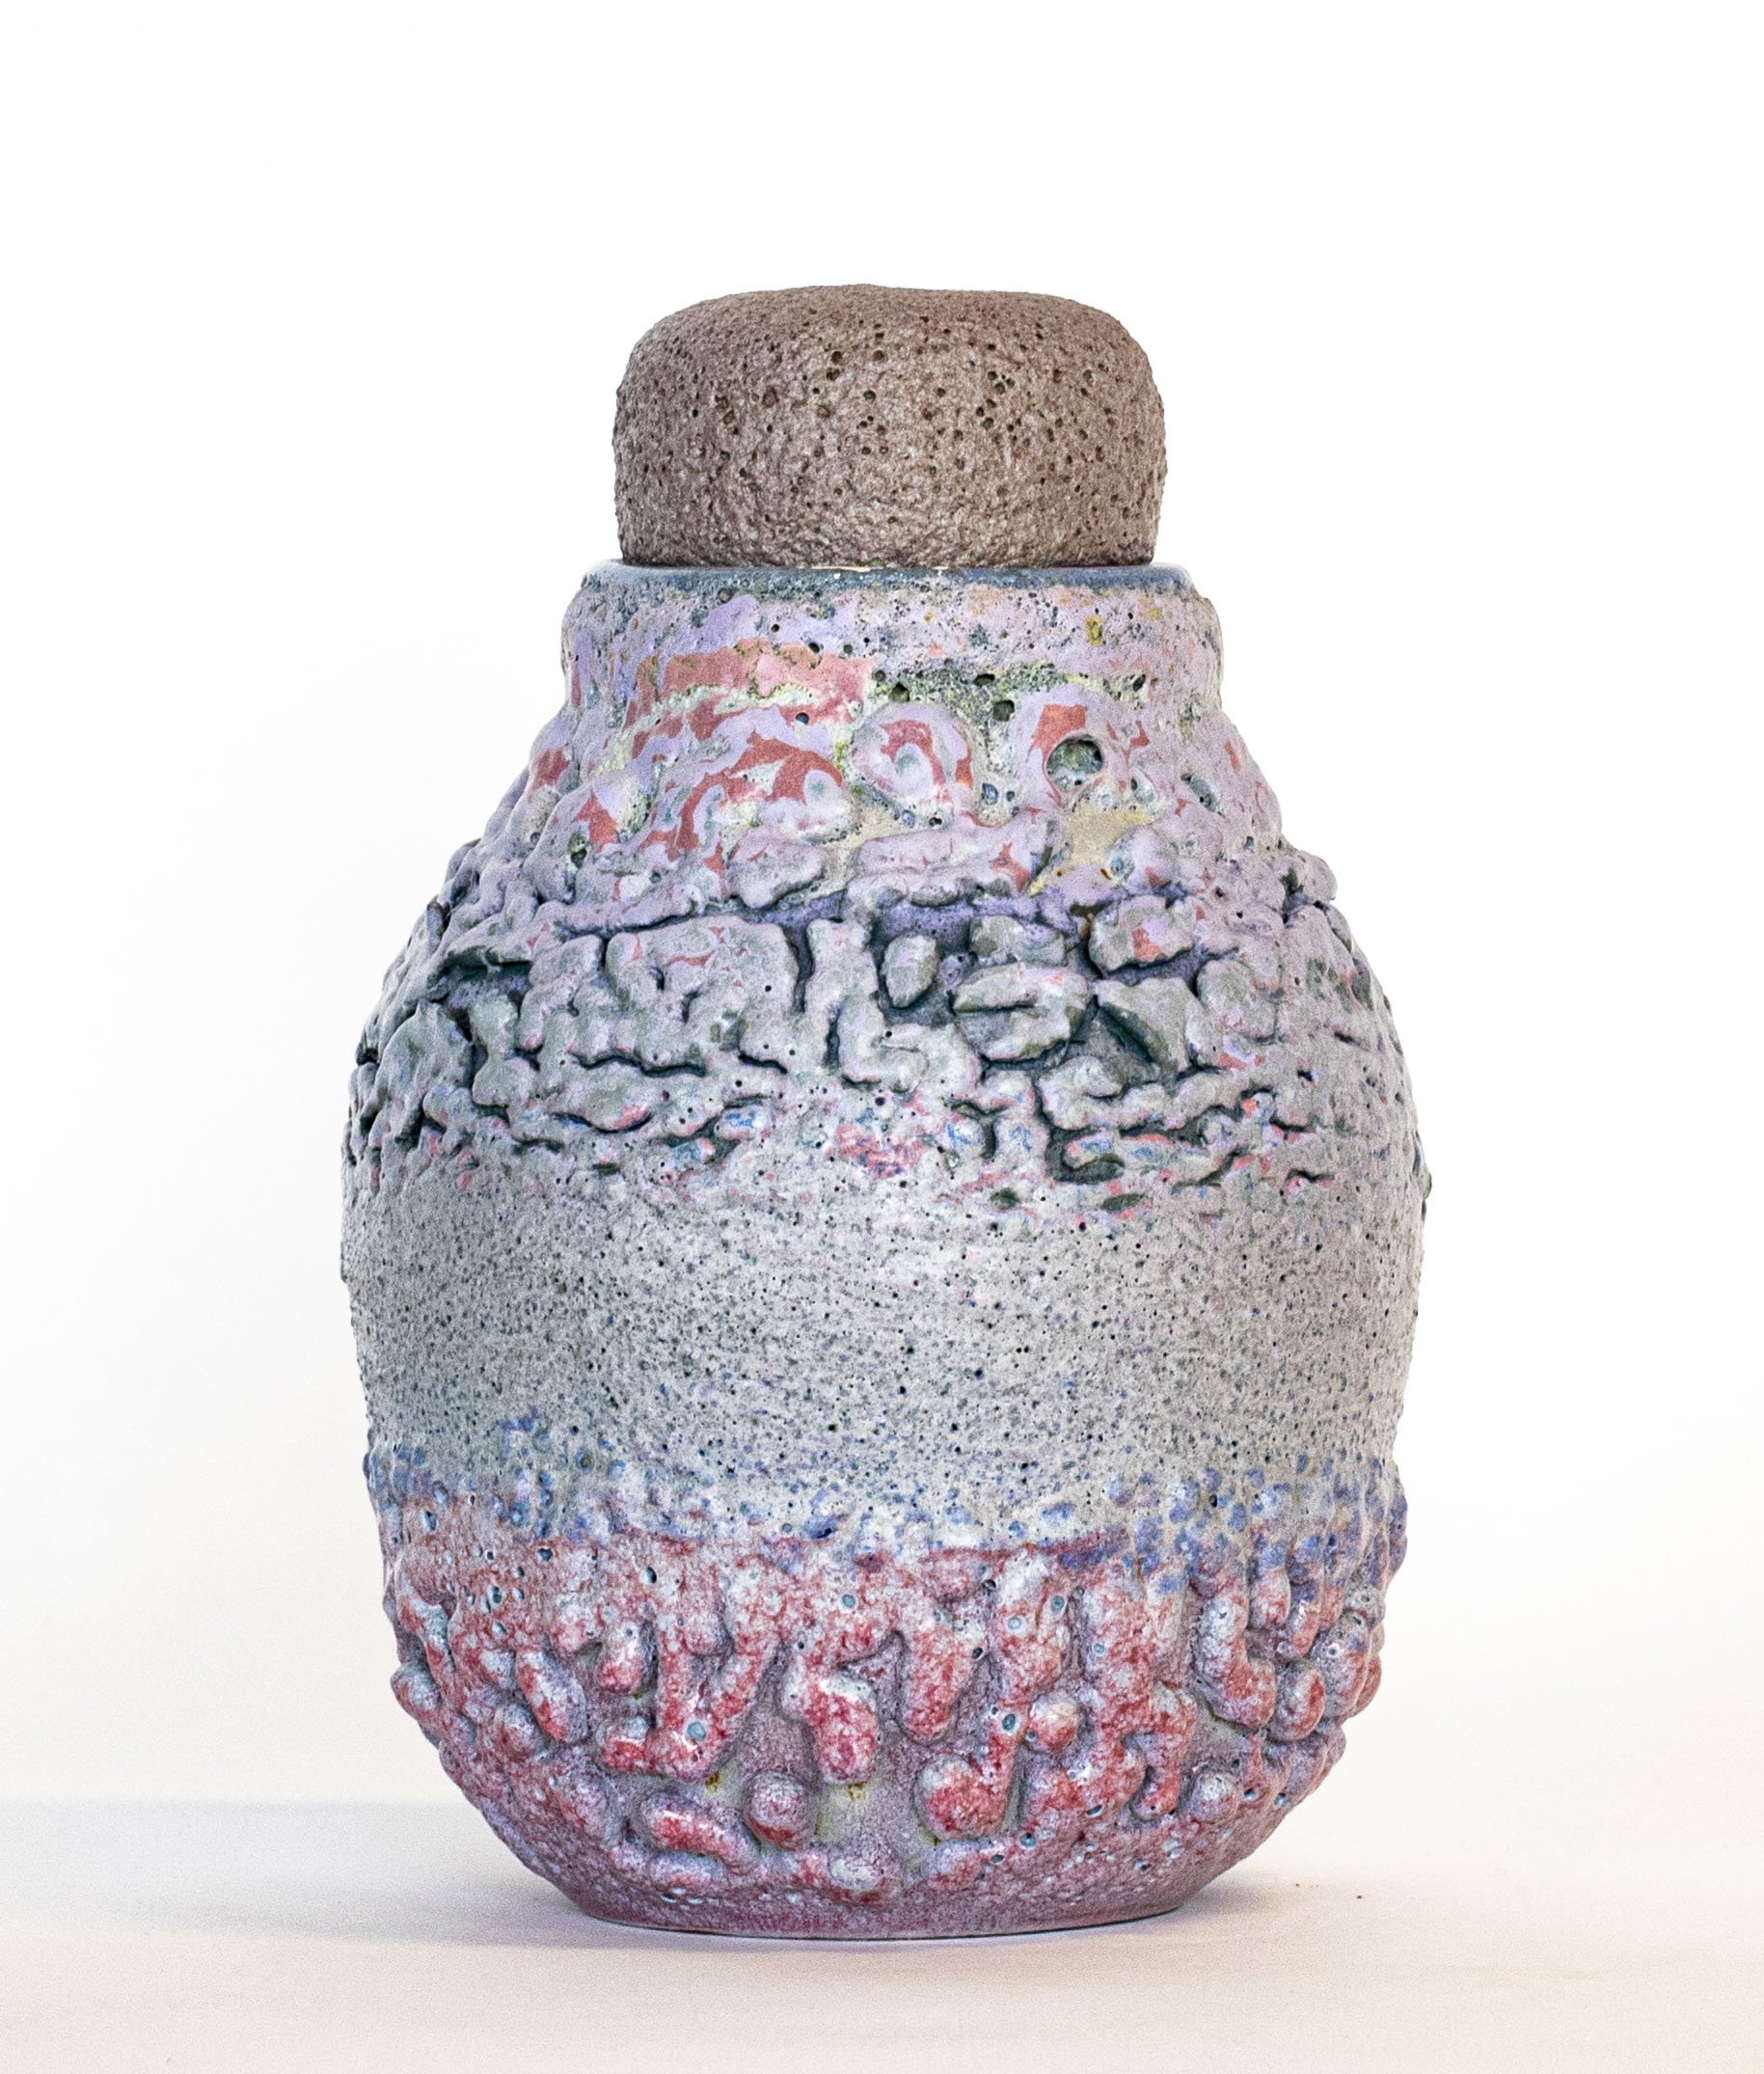  Urn (pink - lavender)  stoneware, glaze 10.5" x 7.5" x 7.5" 